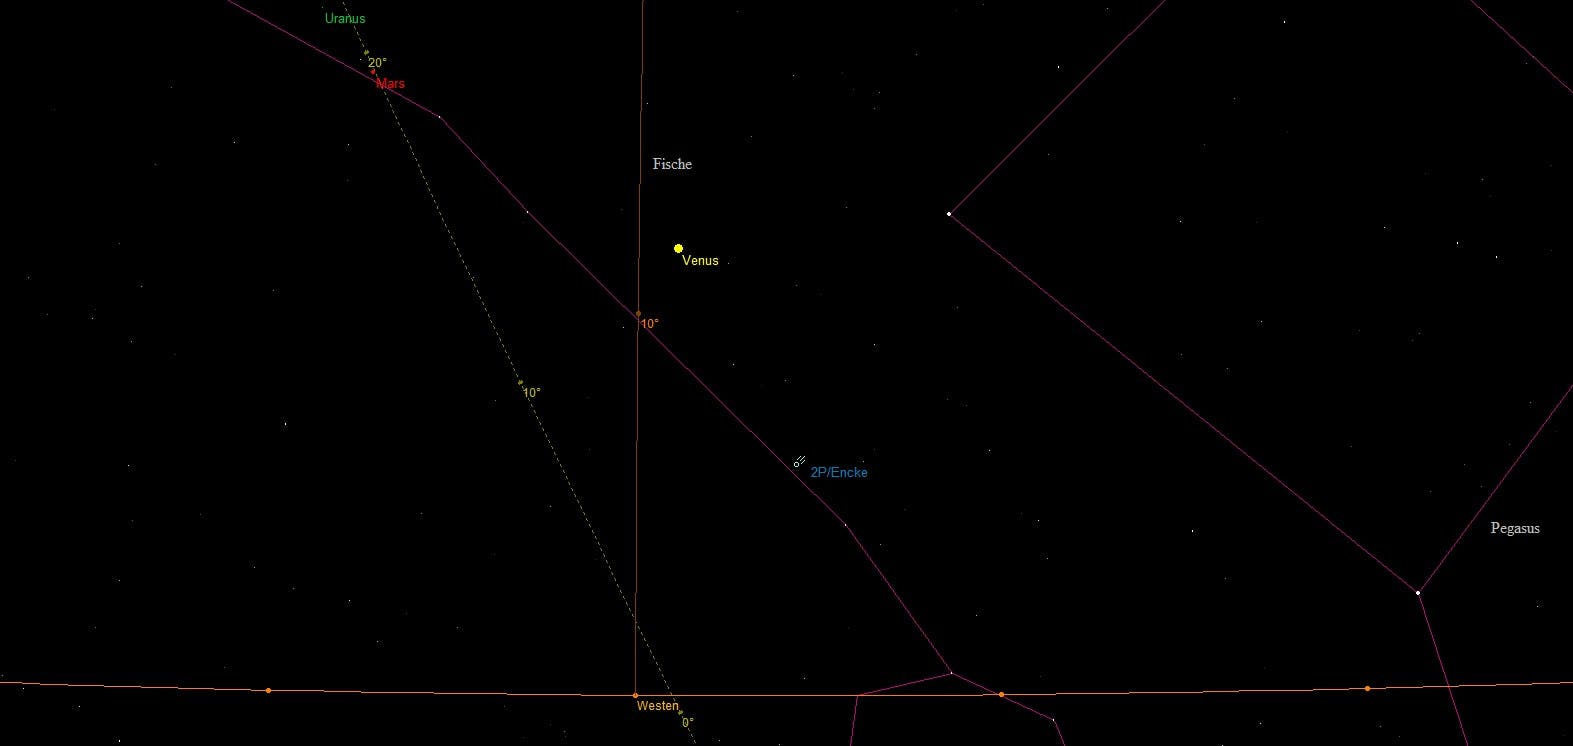 Aufsuchkarte für 2P/Encke, Venus, Mars und Uranus